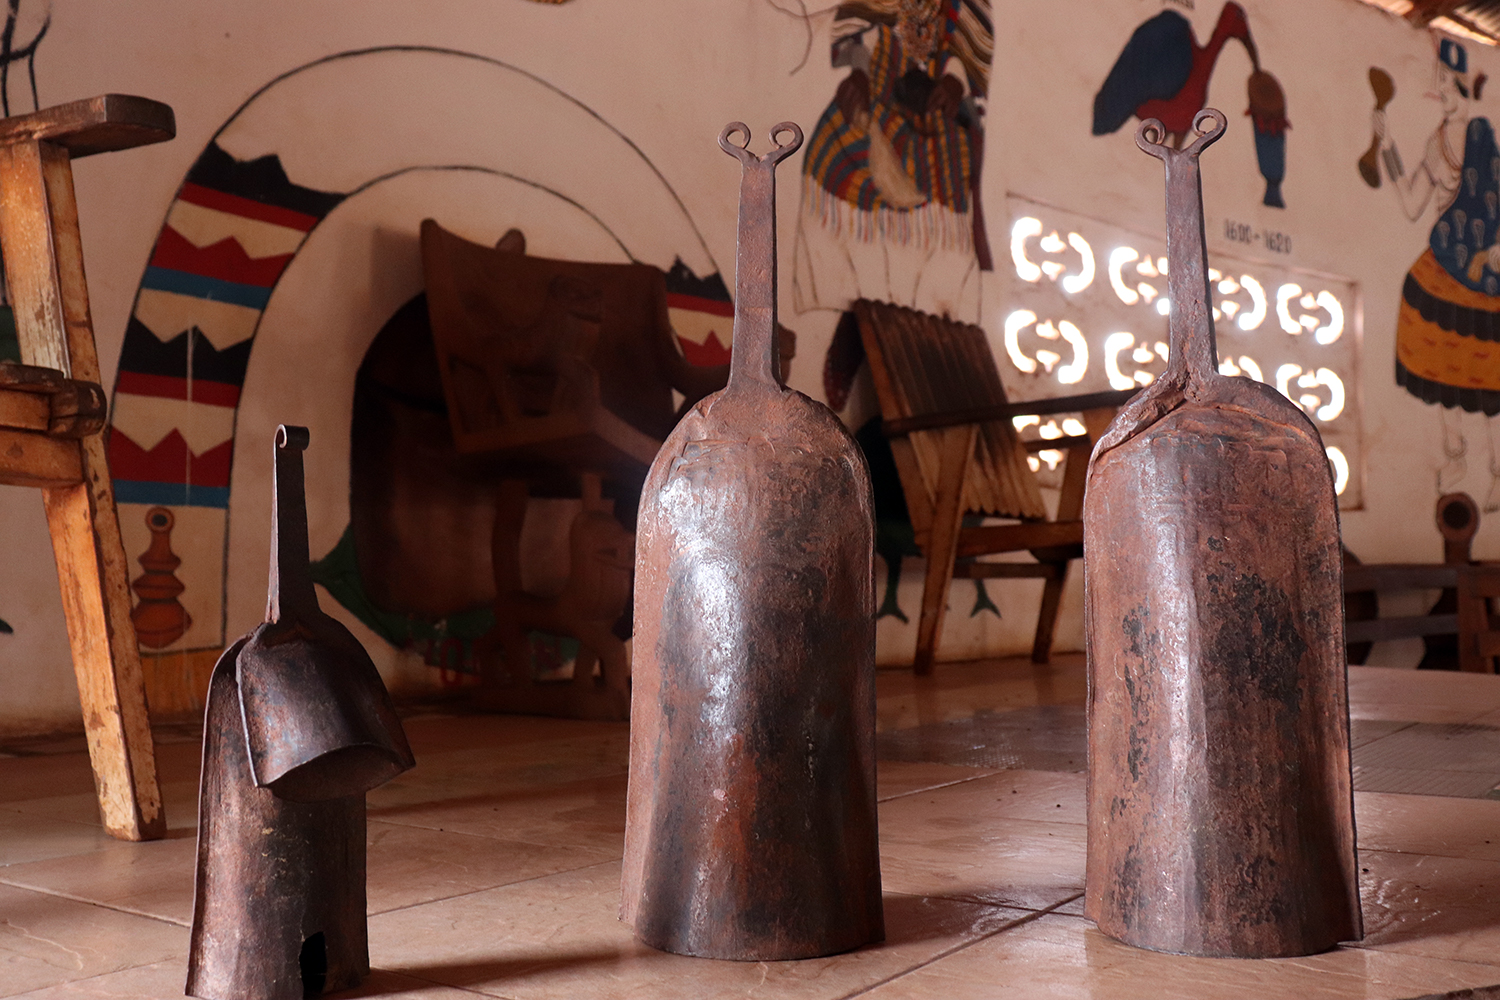 Voici différents Gons, un instrument béninois utilisé dans la musique traditionnelle et donc très lié à la culture du vaudou. 